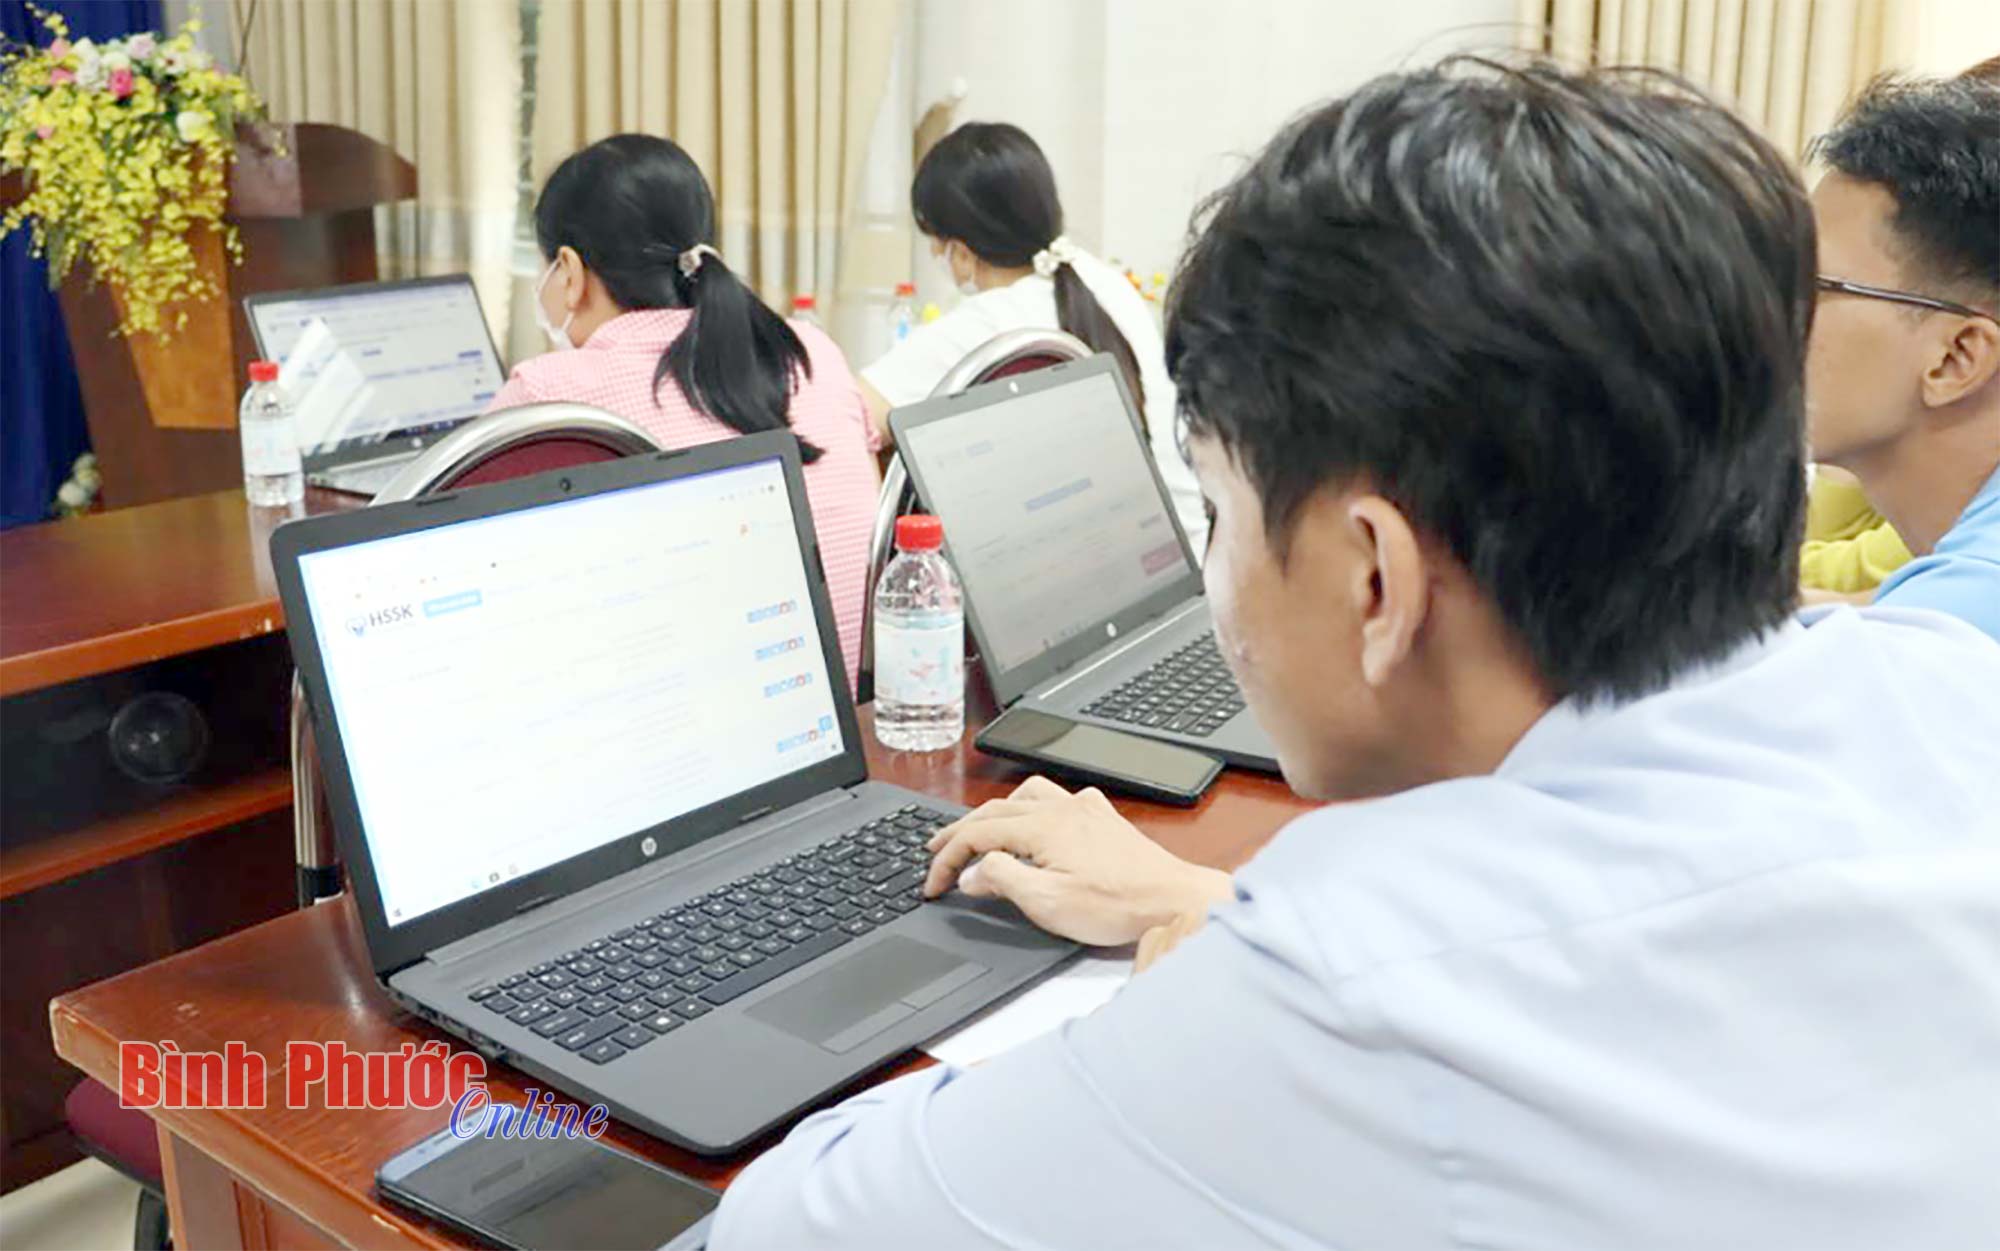 Kỹ thuật viên Viettel Bình Phước hướng dẫn các y, bác sĩ truy cập và sử dụng hồ sơ sức khỏe điện tử bằng máy tính và điện thoại thông minh